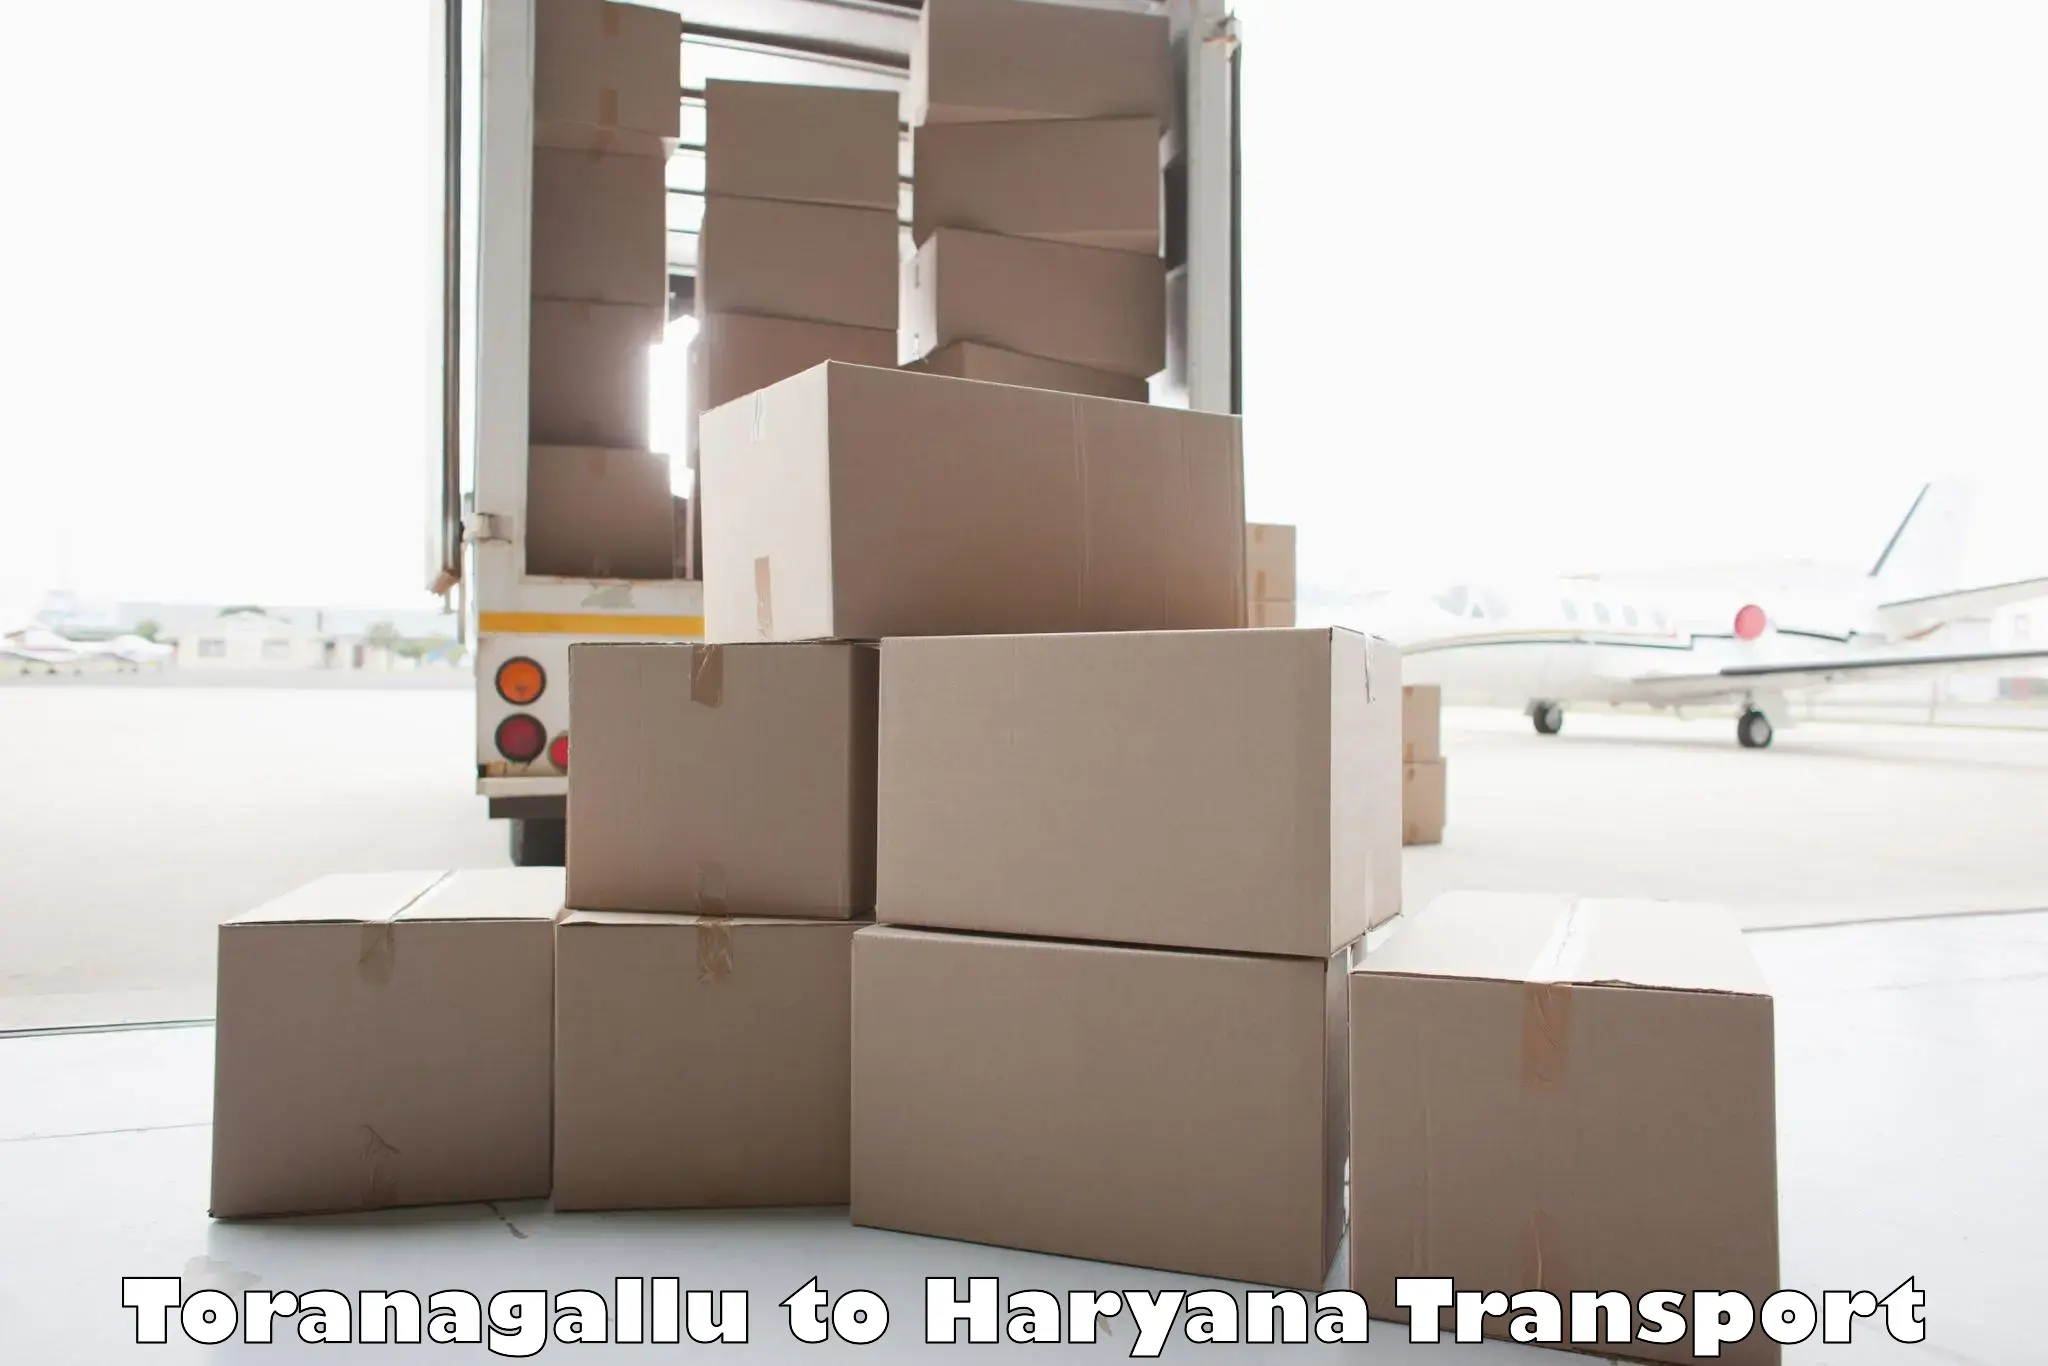 Transportation solution services Toranagallu to NCR Haryana